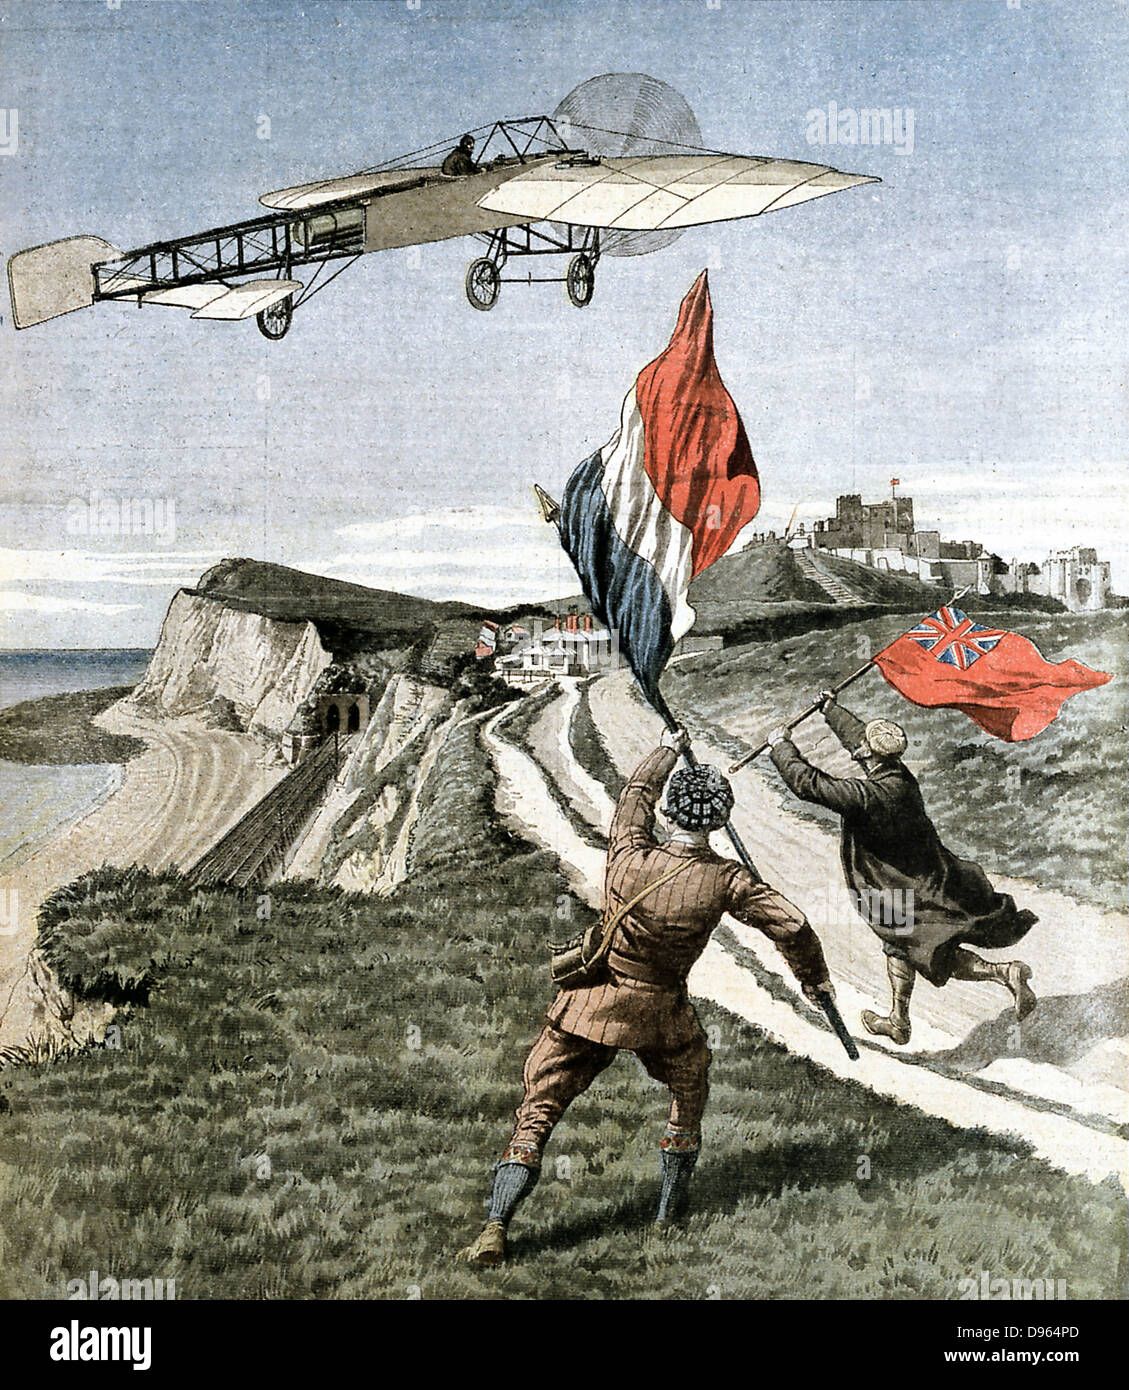 Louis Bleriot (1872-1936), französischer Flieger, fliegt über die Klippen von Dover nach dem Ärmelkanal von Les Boraques in der Nähe von Calais, Frankreich, in seinem eindecker Bleriot XI. am 25. Juli 1909. Abbildung aus dem Französischen "Le Petit Journal", Paris, 8. August 1901. Stockfoto